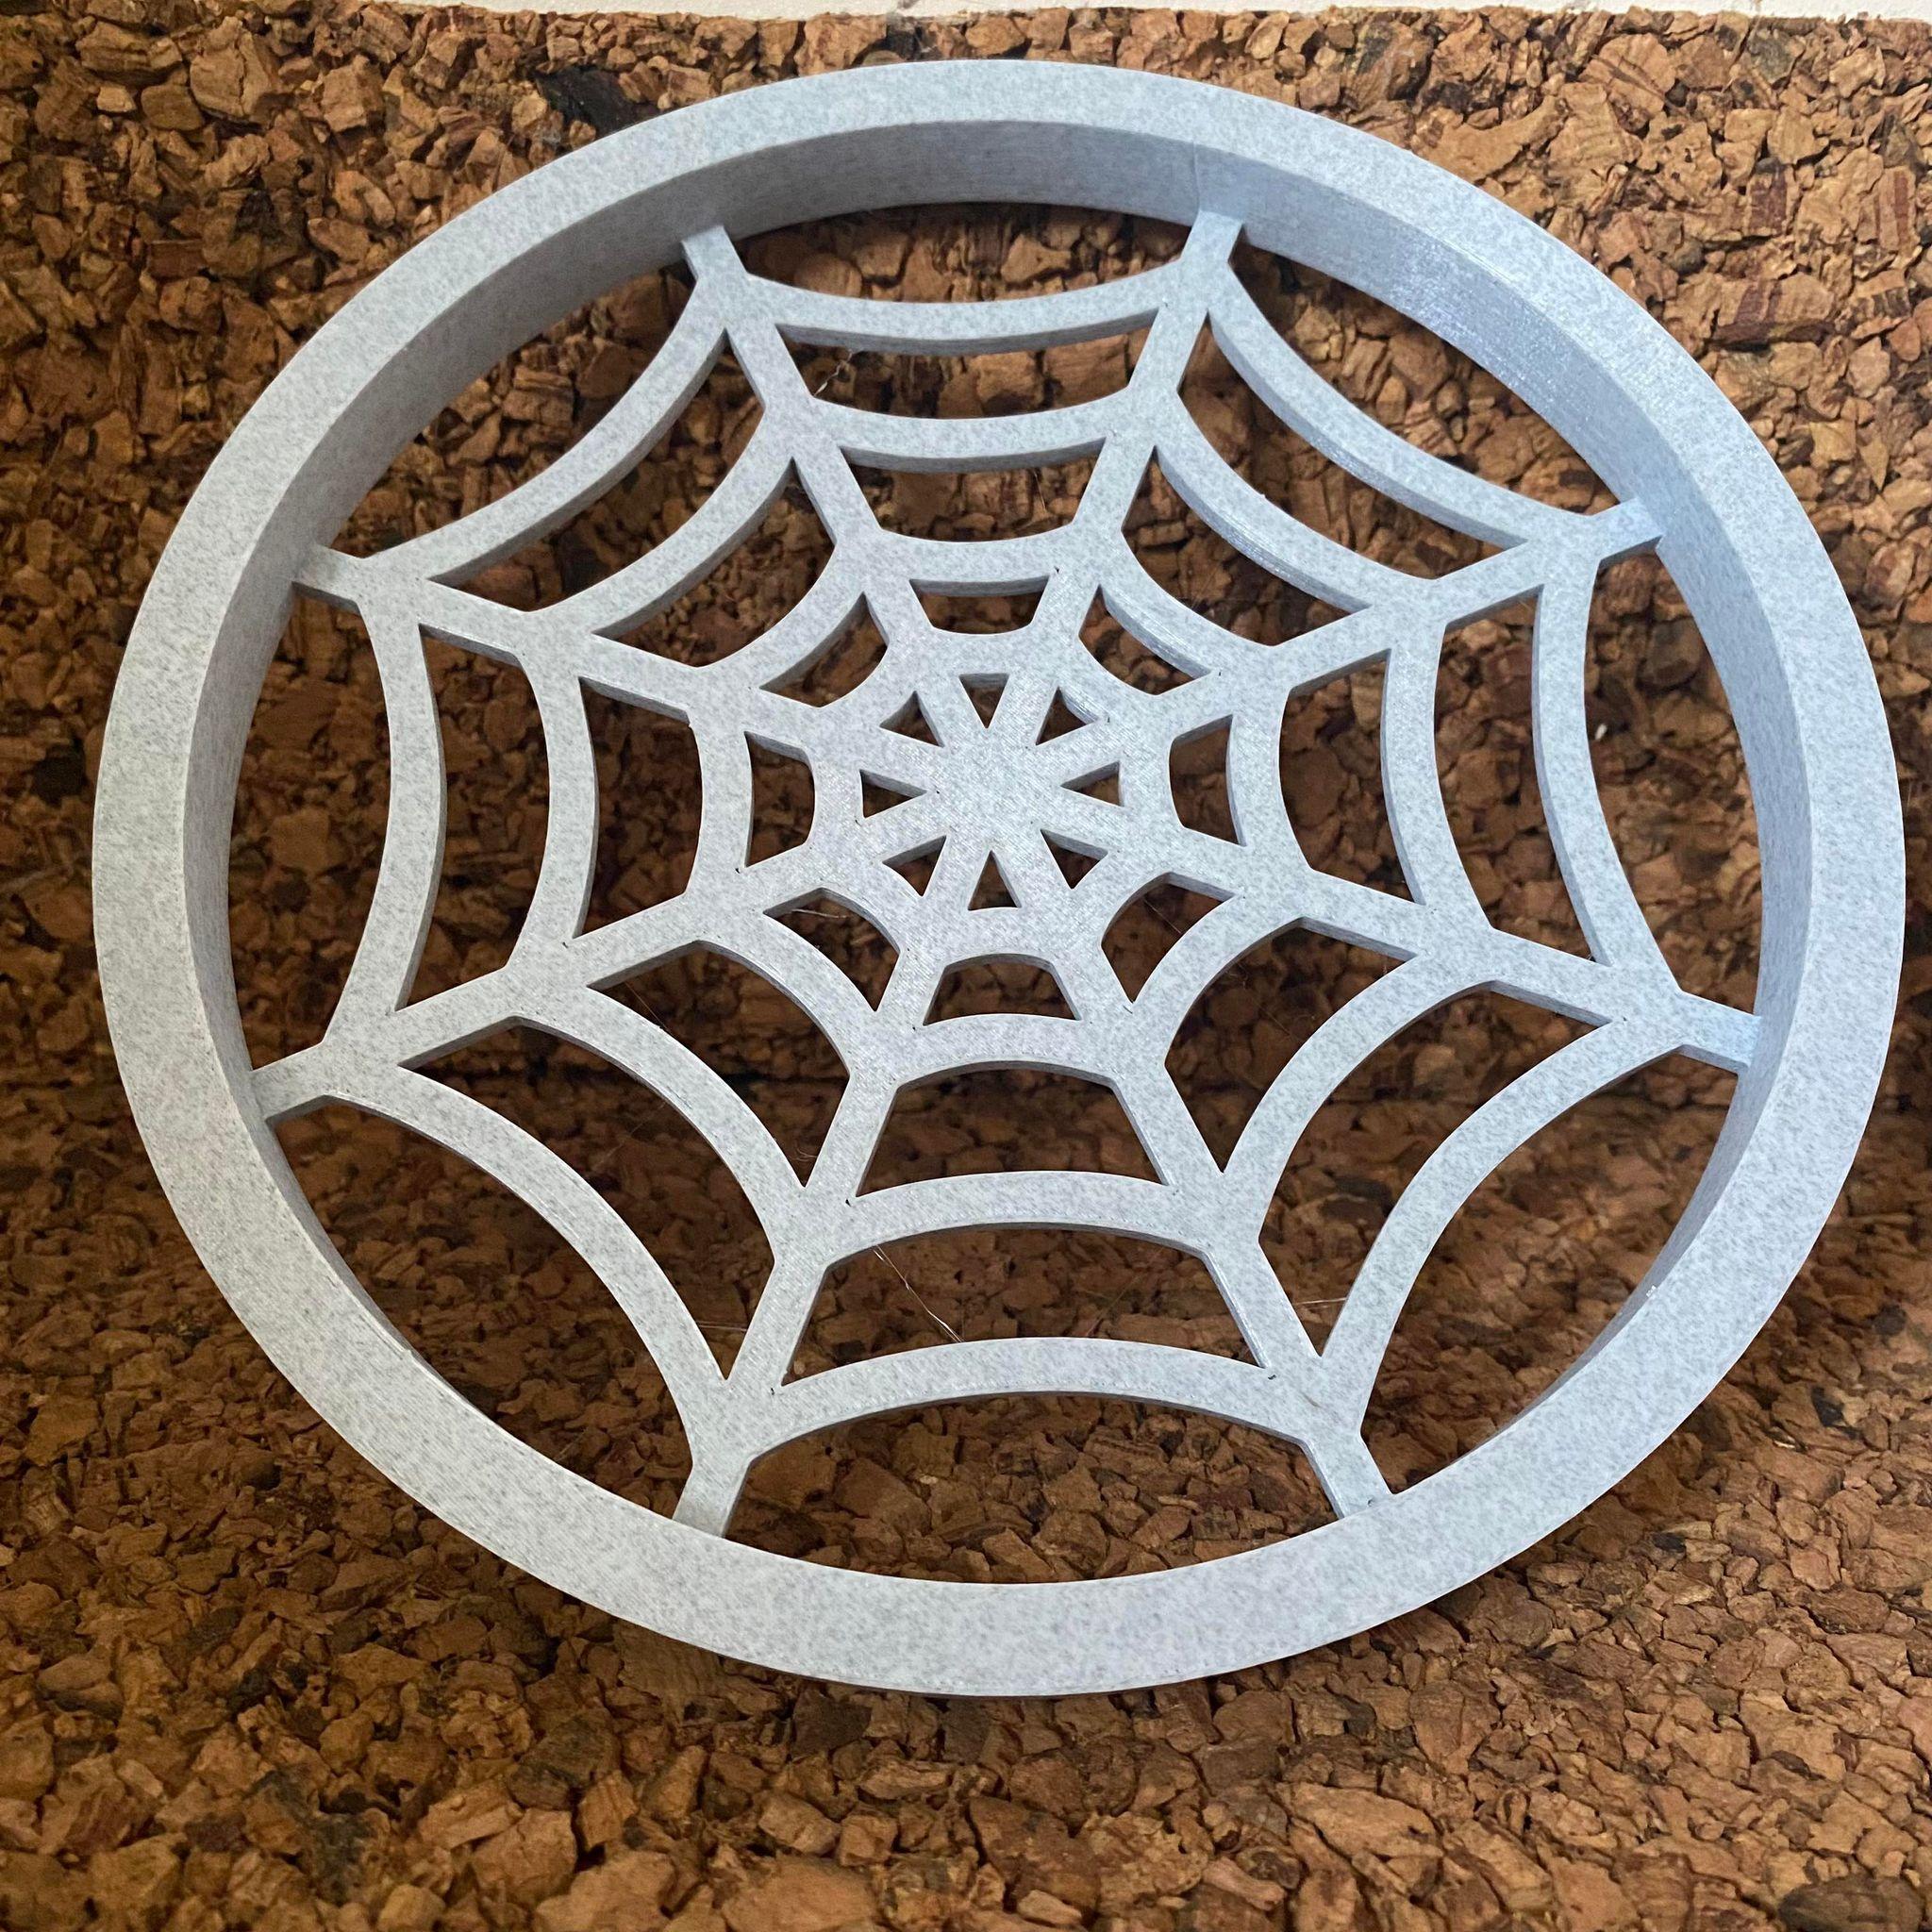 Spider web tray.stl 3d model